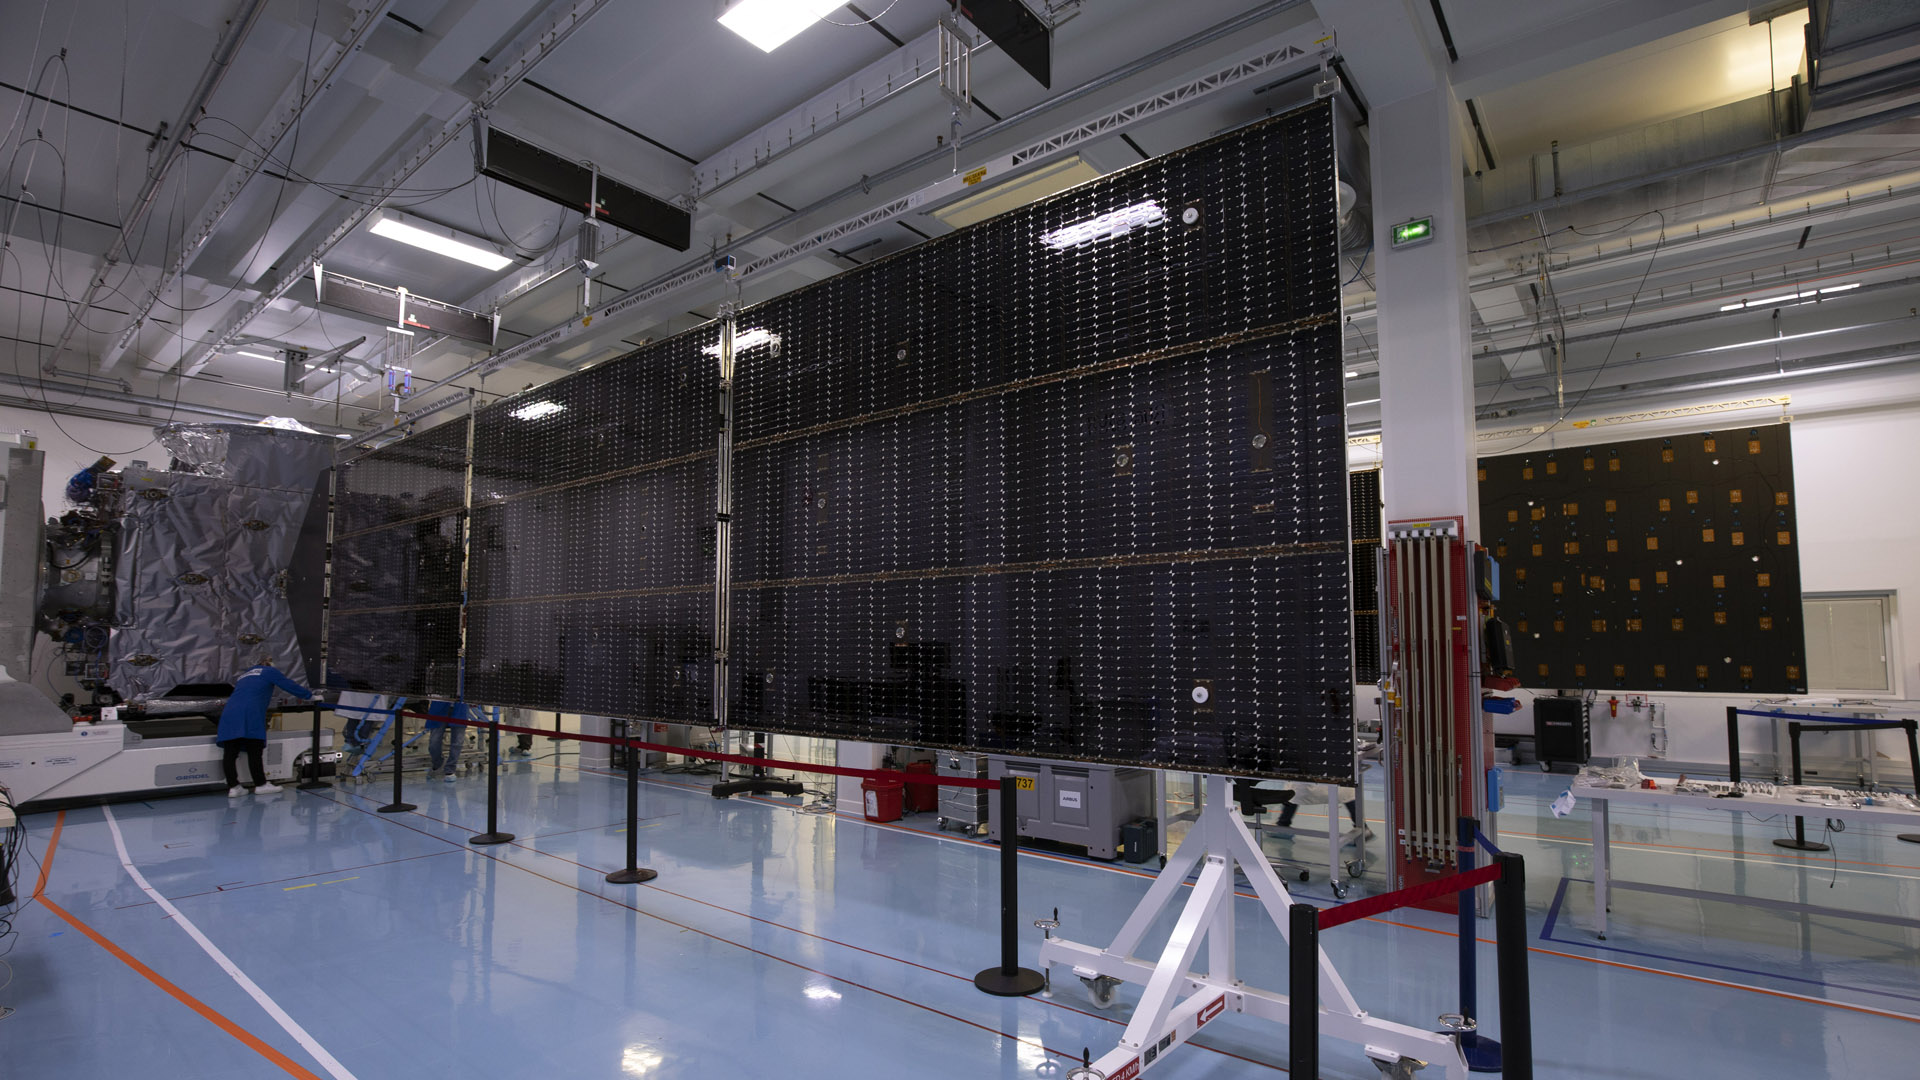 Het JUICE-ruimtevaartuig tijdens een plaatsingstest voor zonnepanelen.